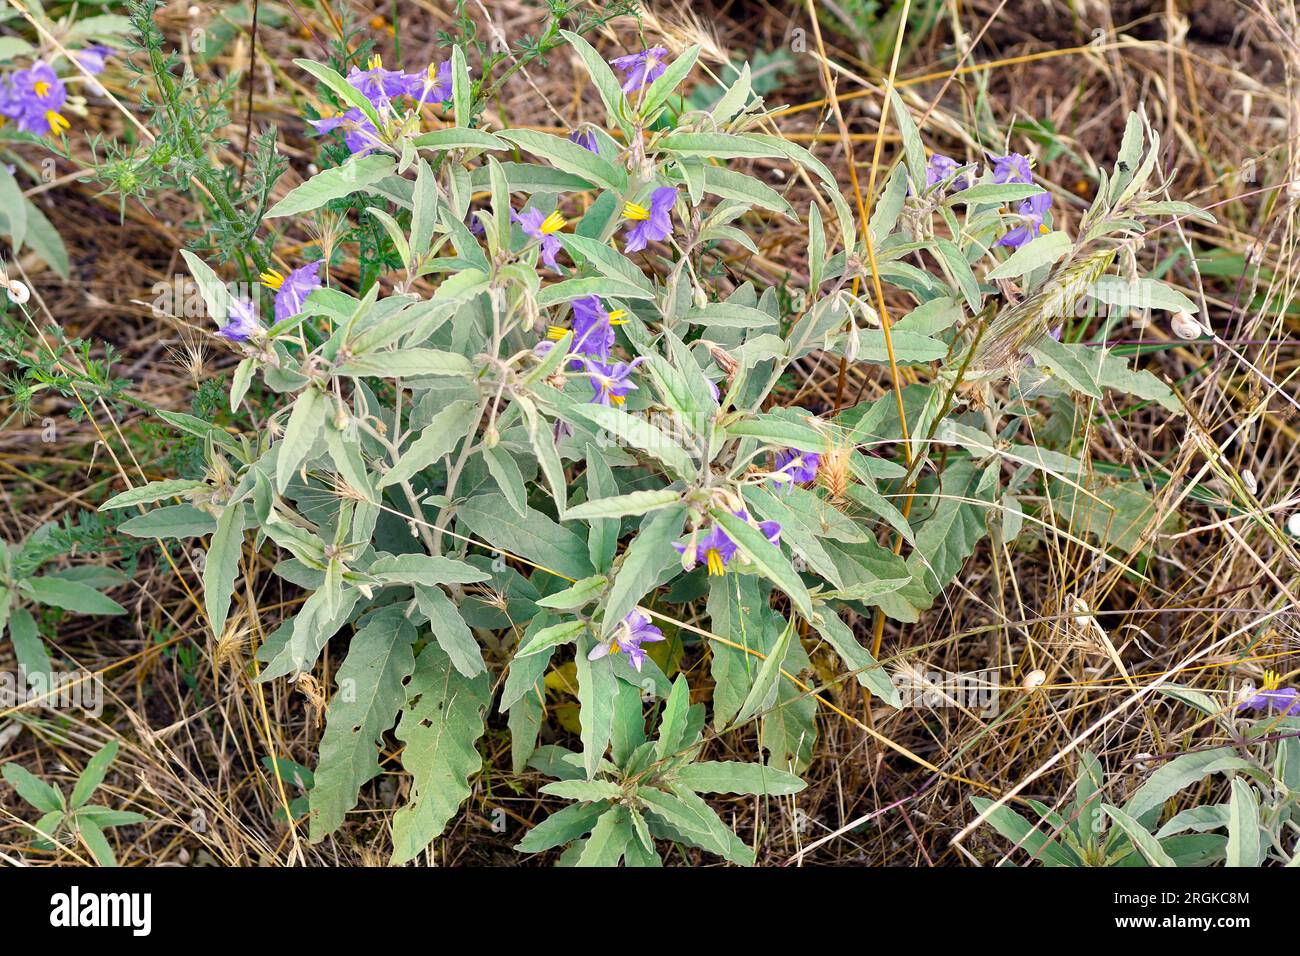 Grèce, floraison de feuilles argentées Nightshade une plante toxique Banque D'Images